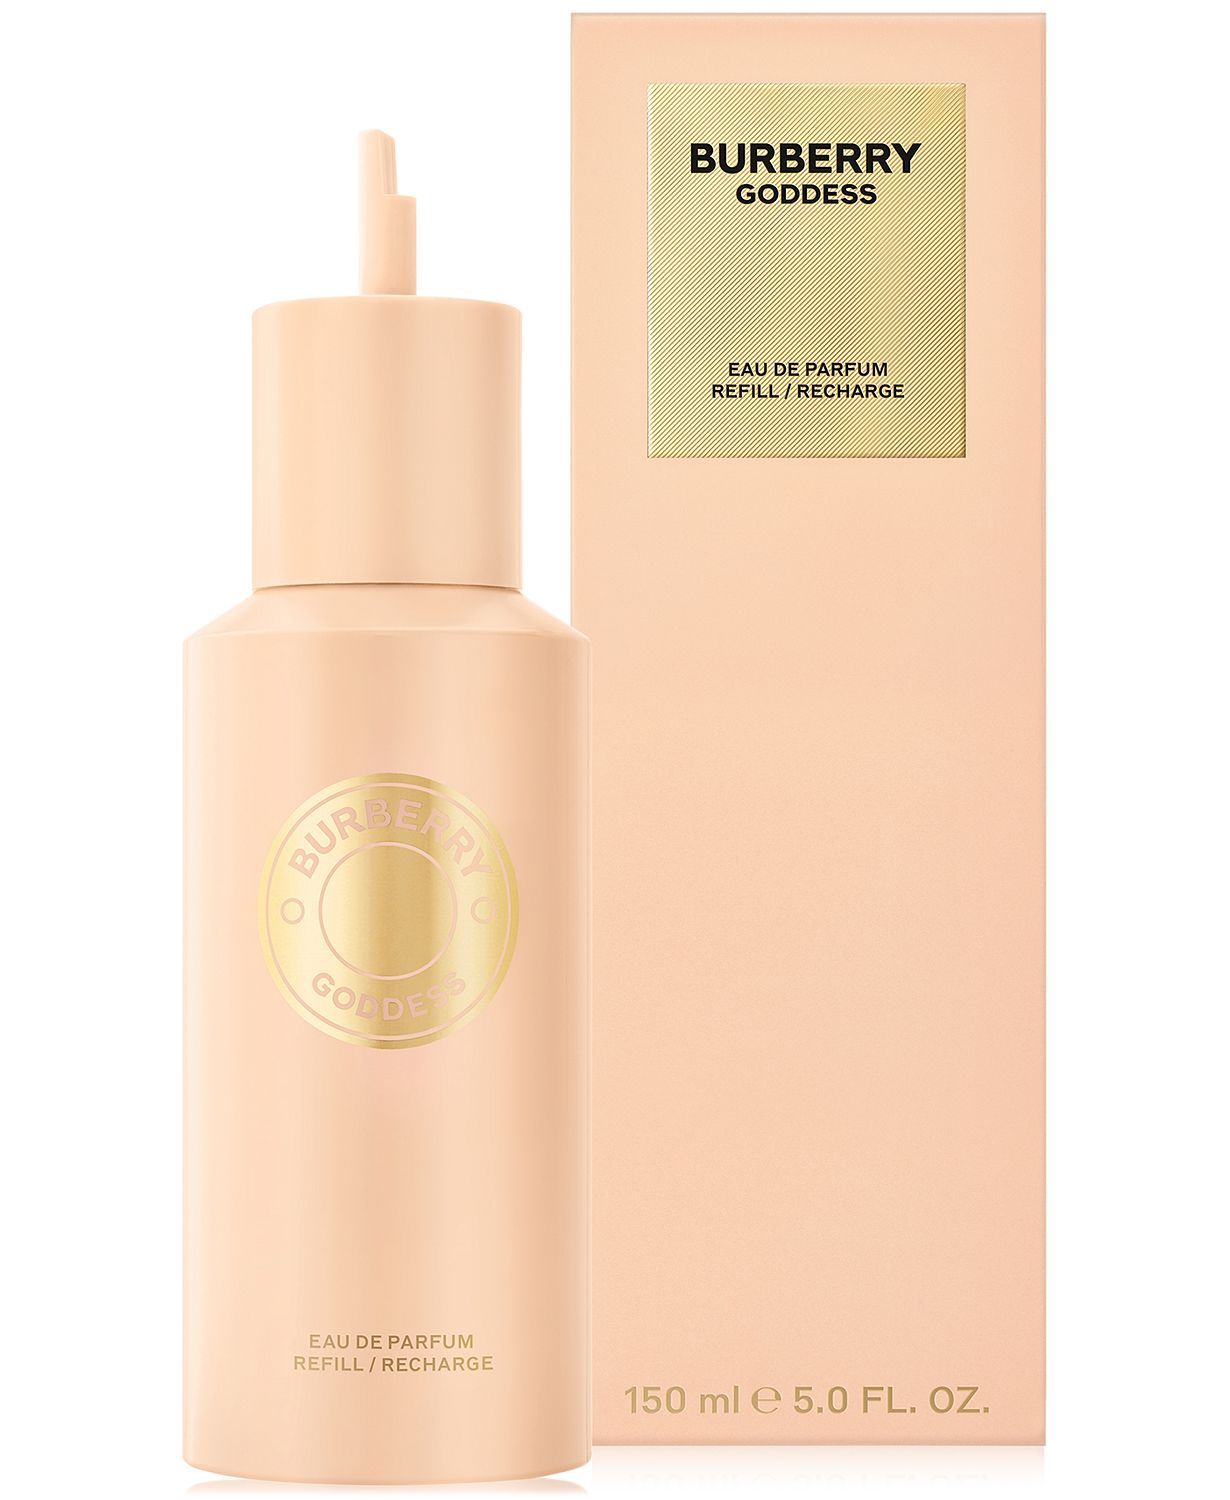 Burberry Goddess Eau de Parfum Refill, 5 oz.